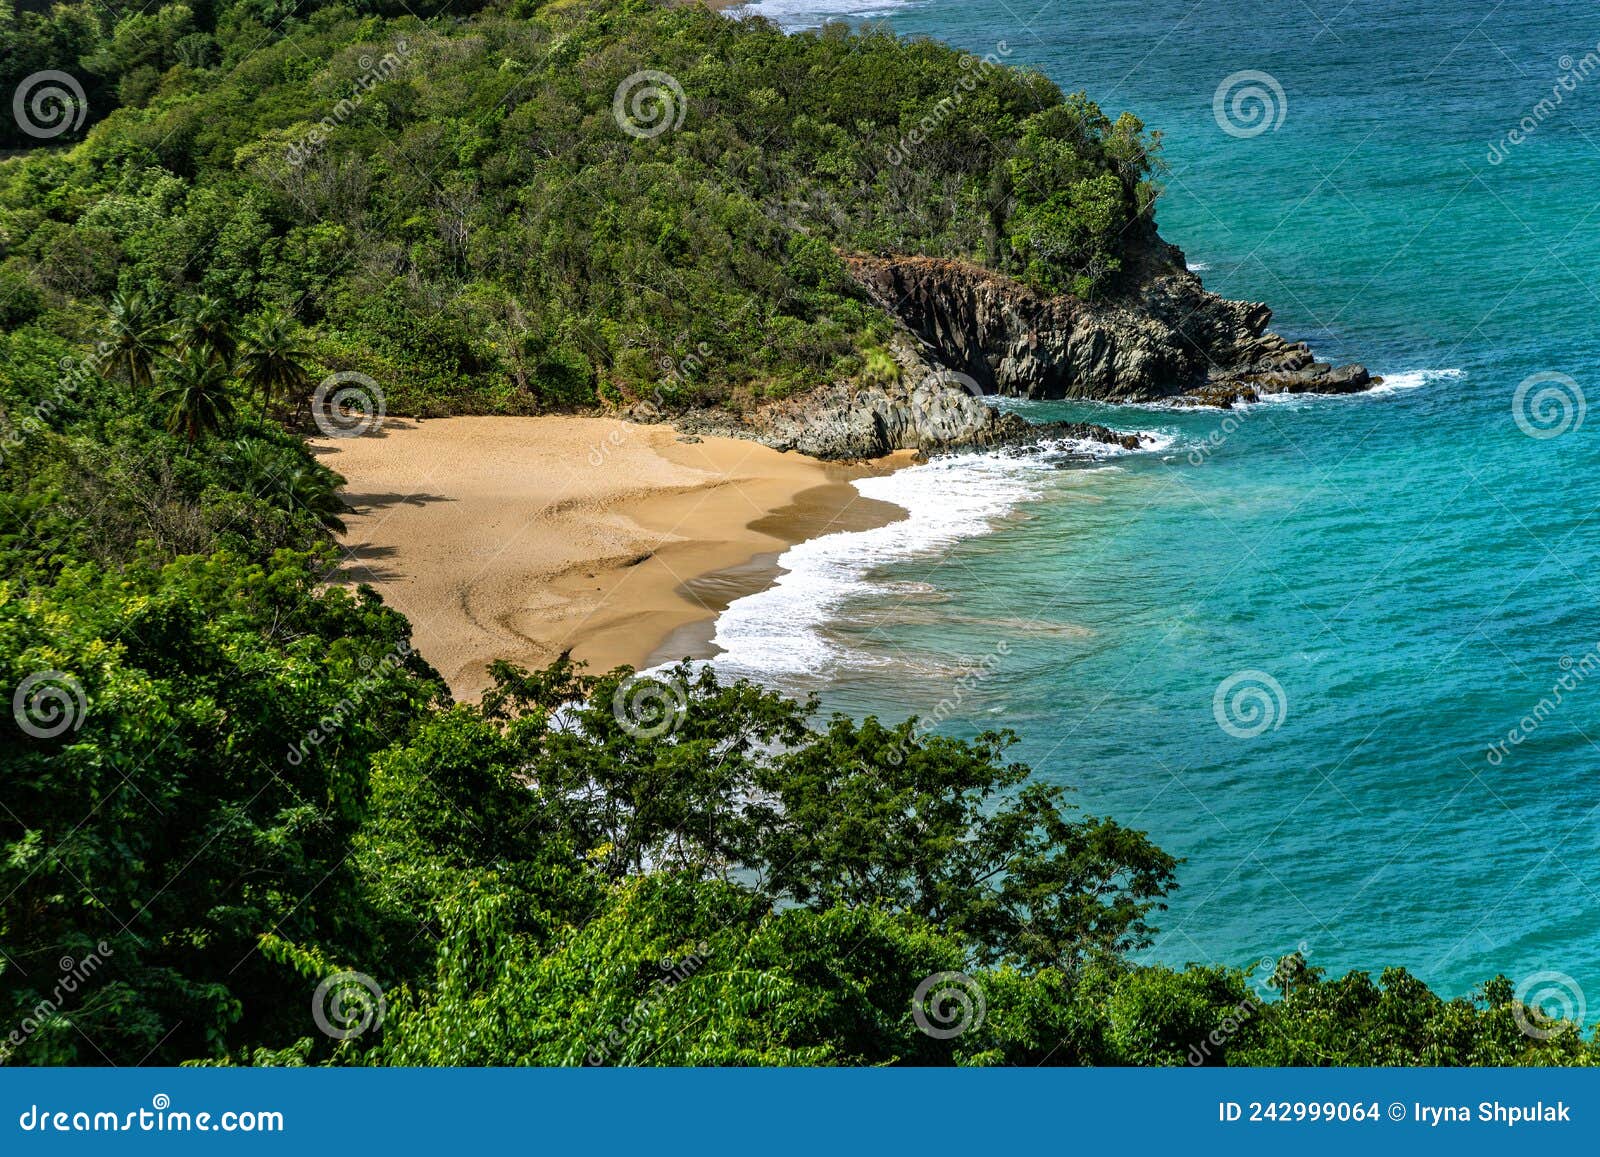 beach plage de tillet, basse-terre, guadeloupe, caribbean